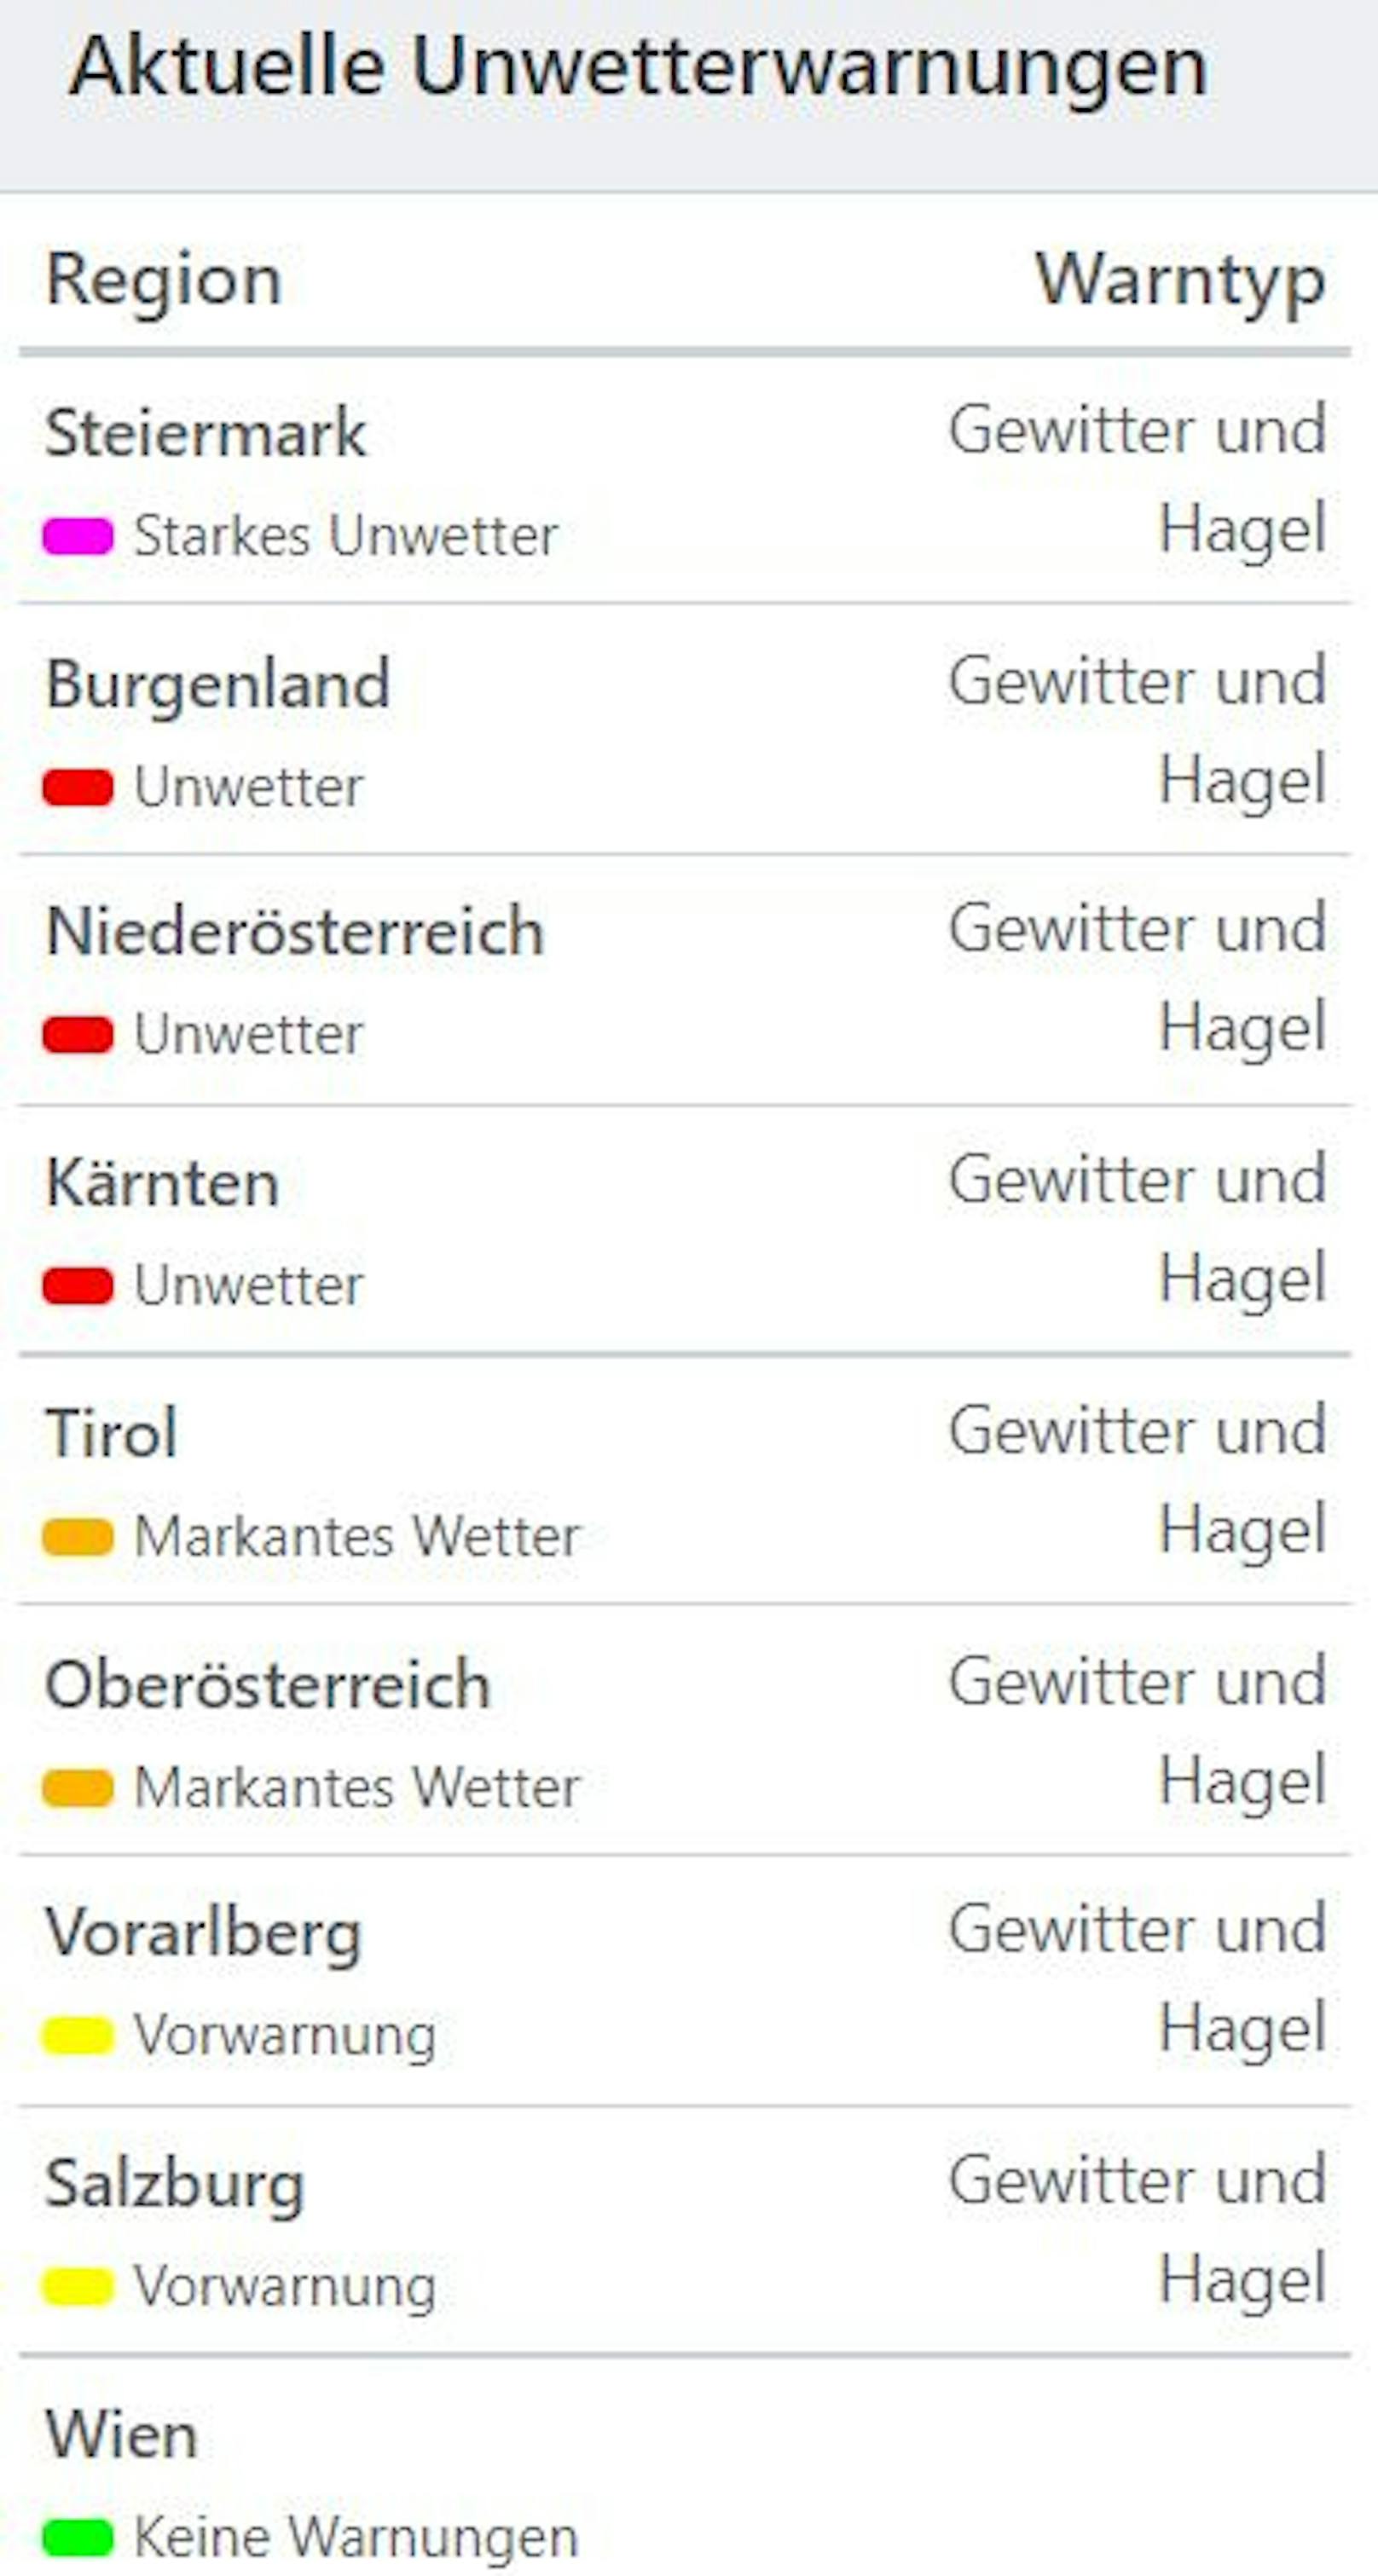 Aktuelle Unwetterwarnungen in Österreich (Stand 16.30 Uhr)